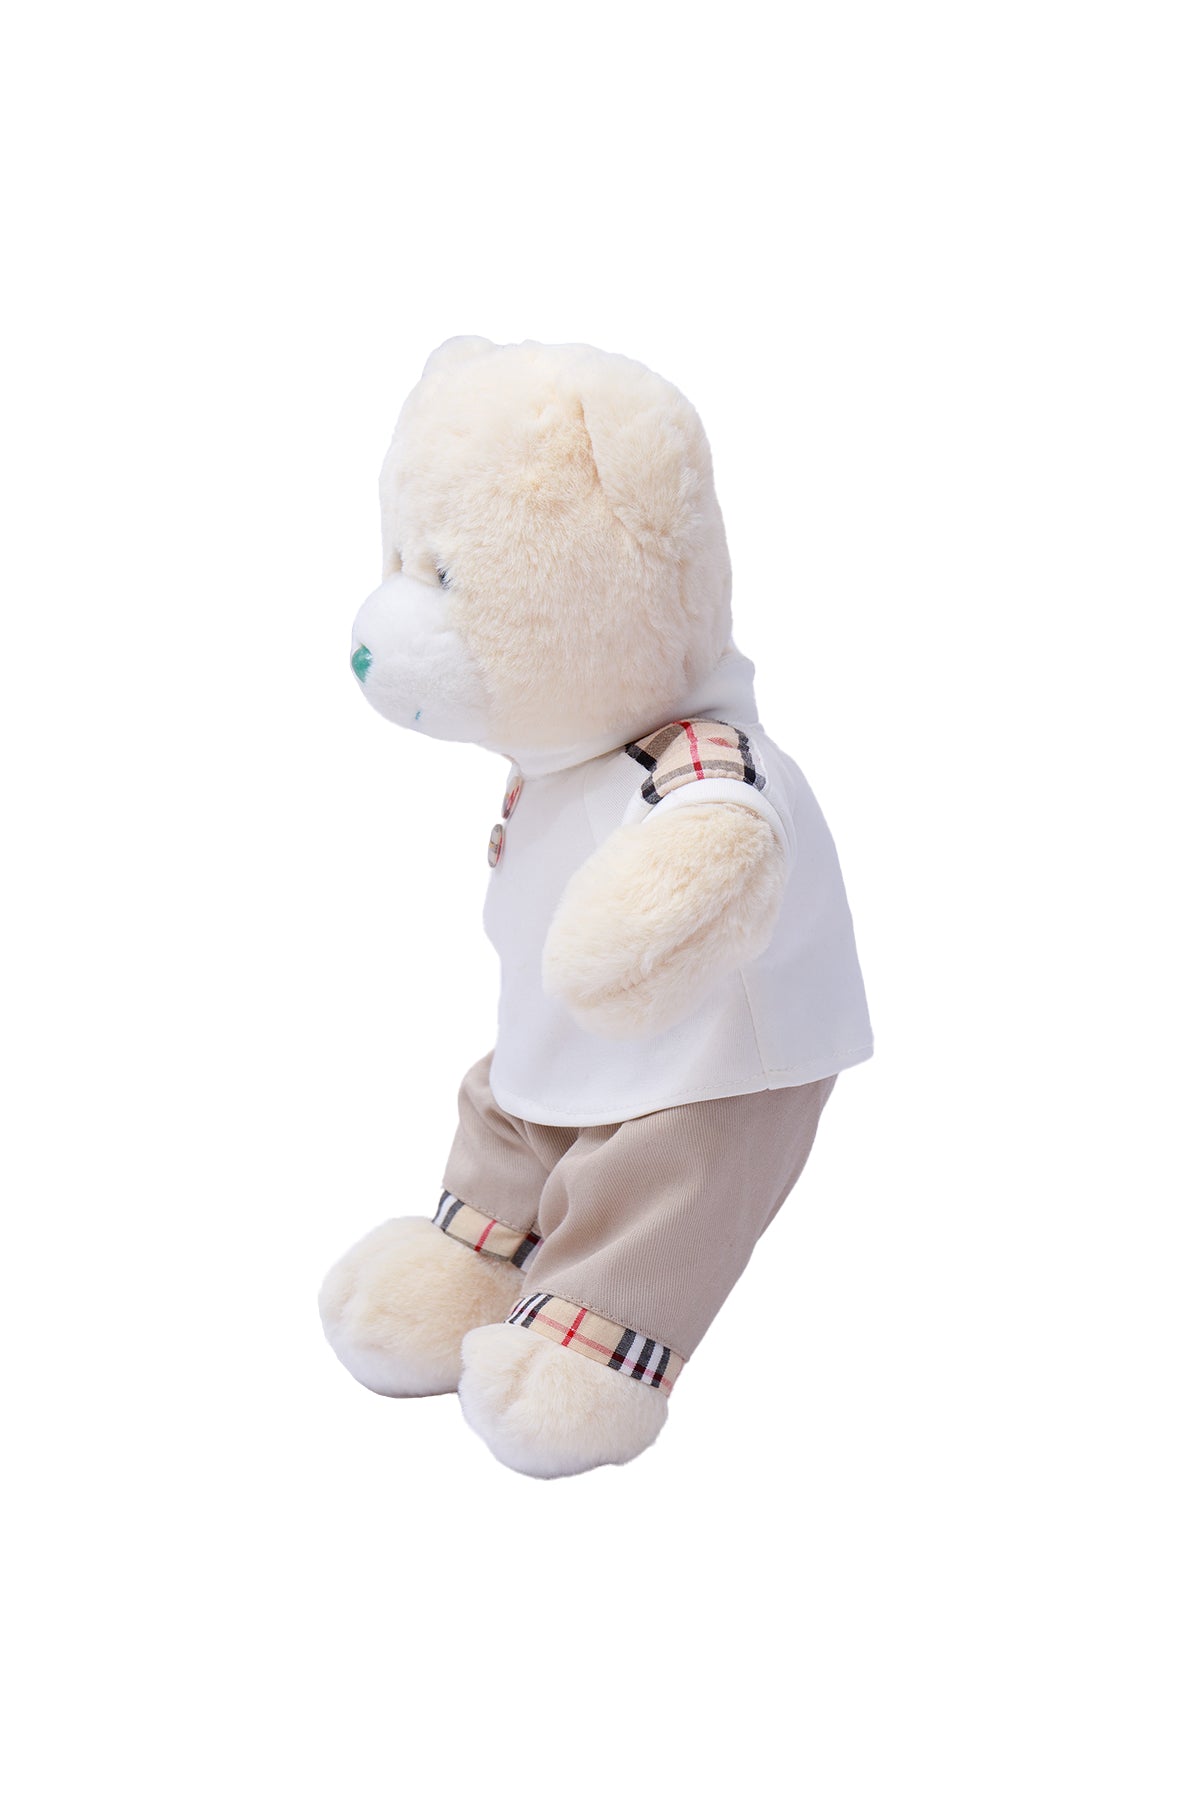 Stuffed Soft Boy Teddy Bear Toy